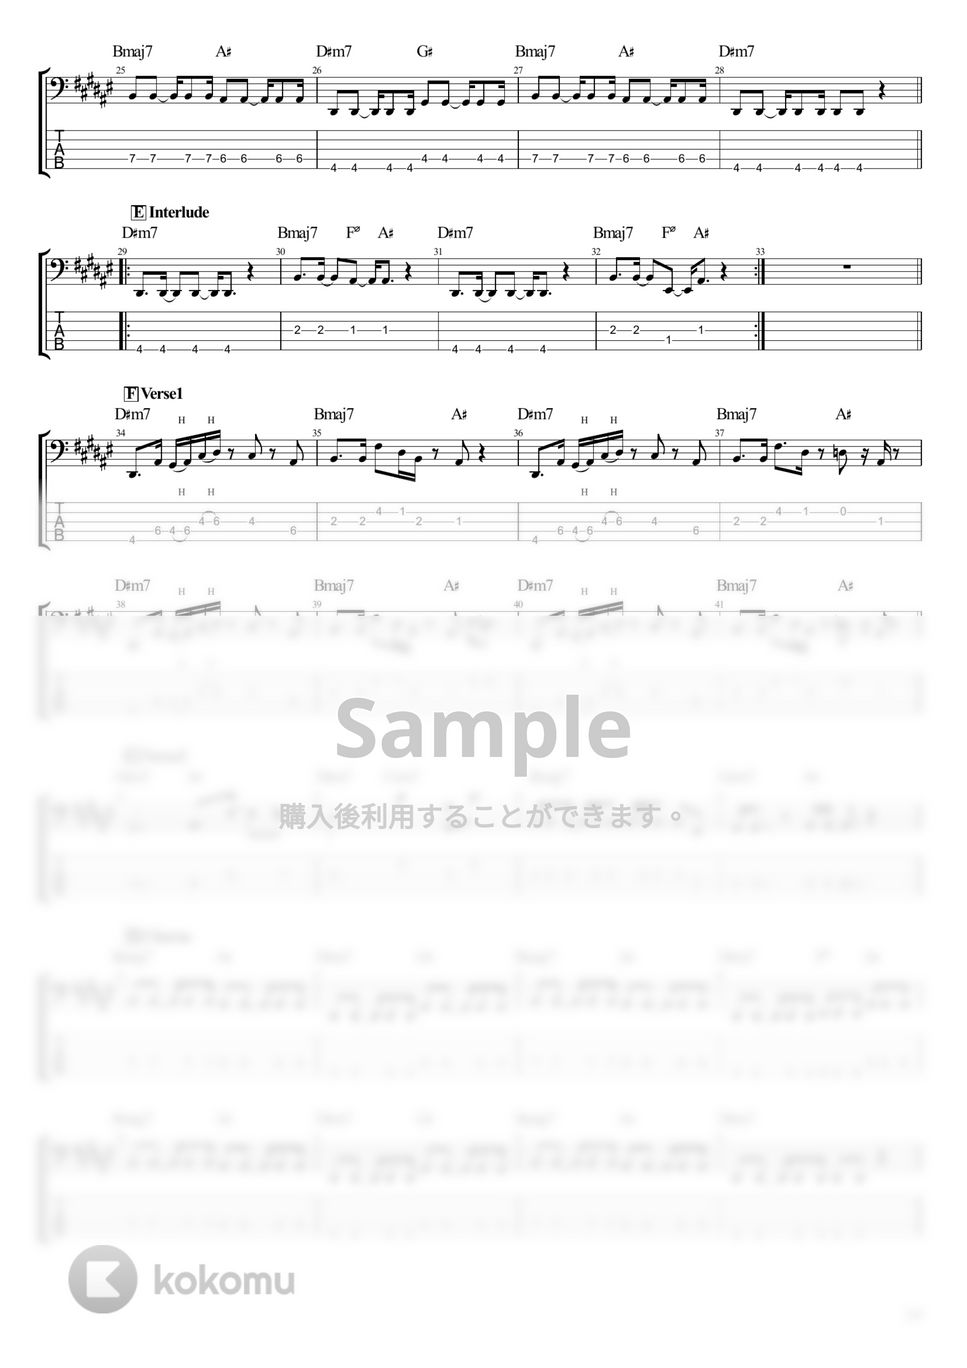 キタニタツヤ - 悪魔の踊り方 (ベース Tab譜 5弦) by T's bass score